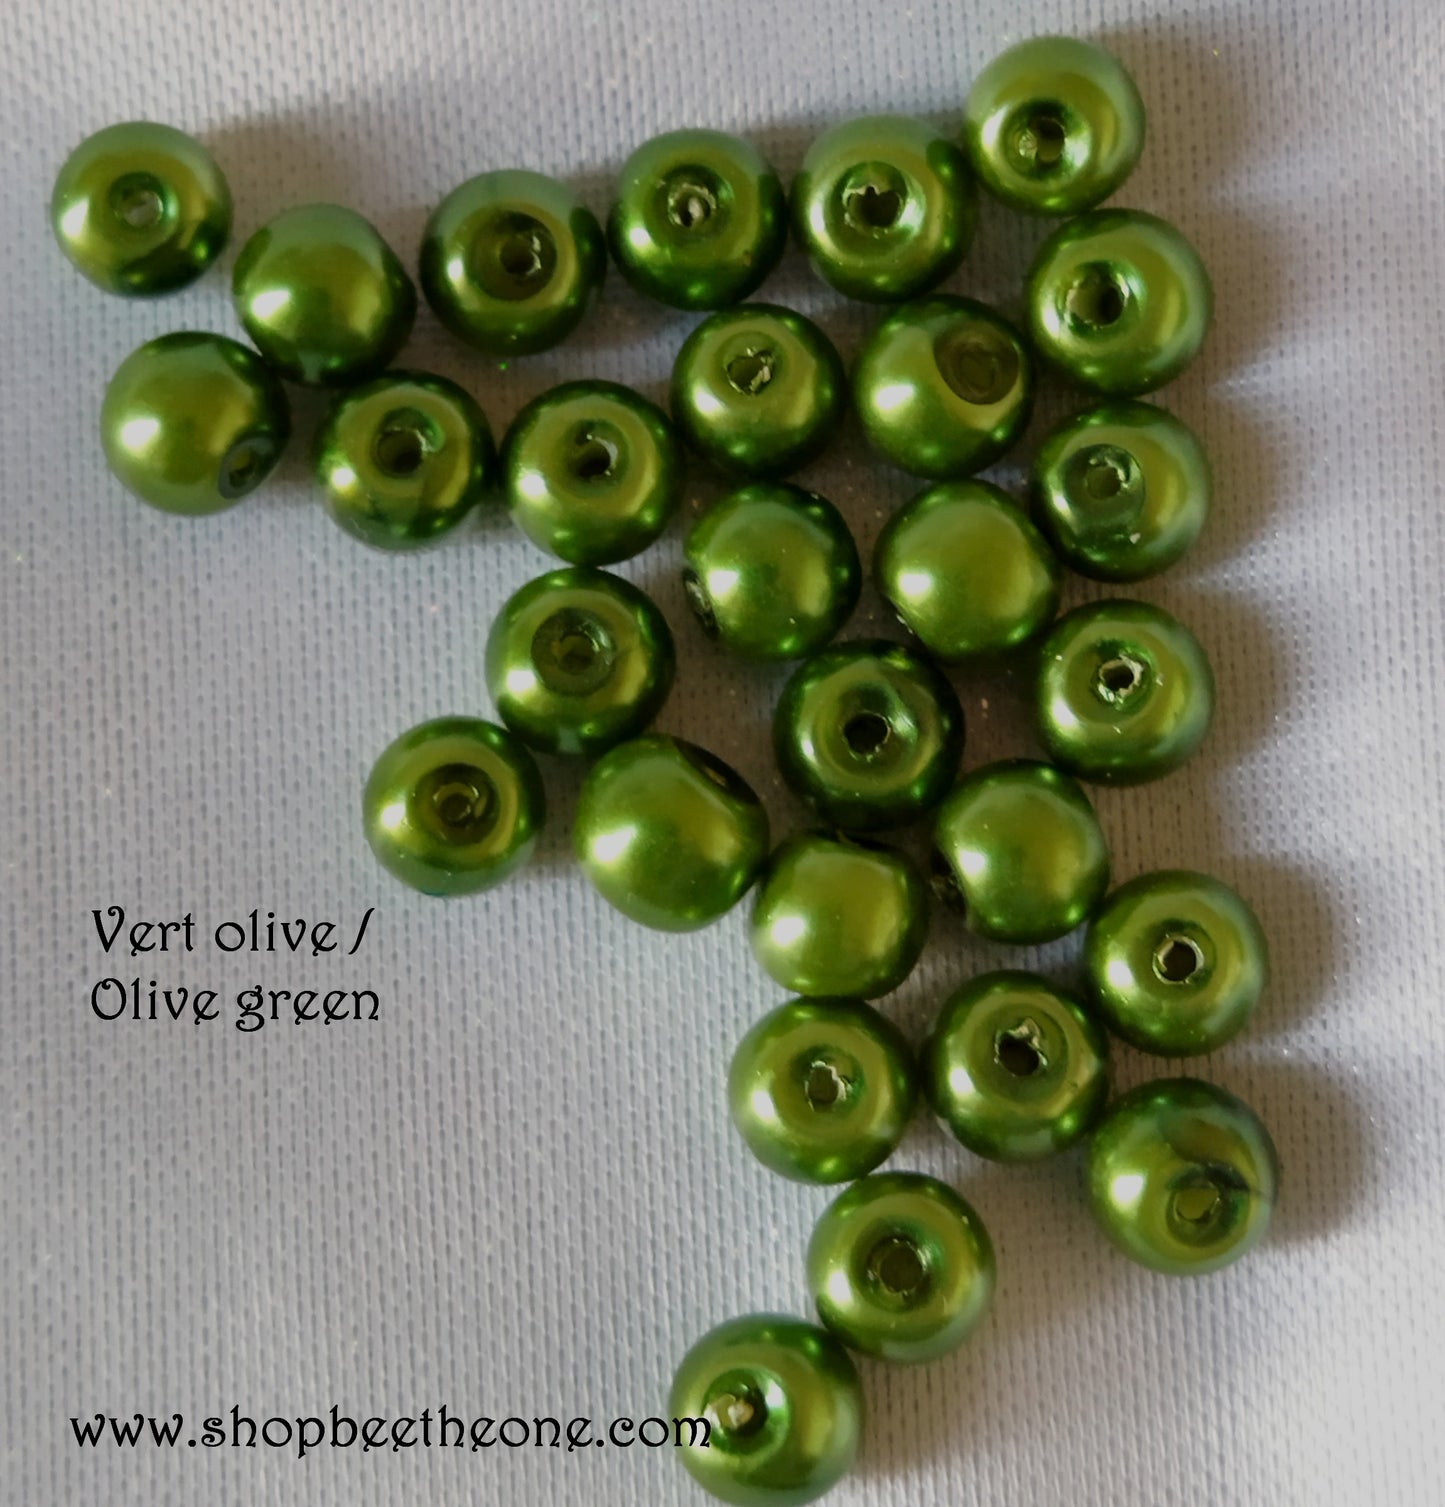 Perle ronde en plastique - 5-6 mm - camaïeu de vert au choix